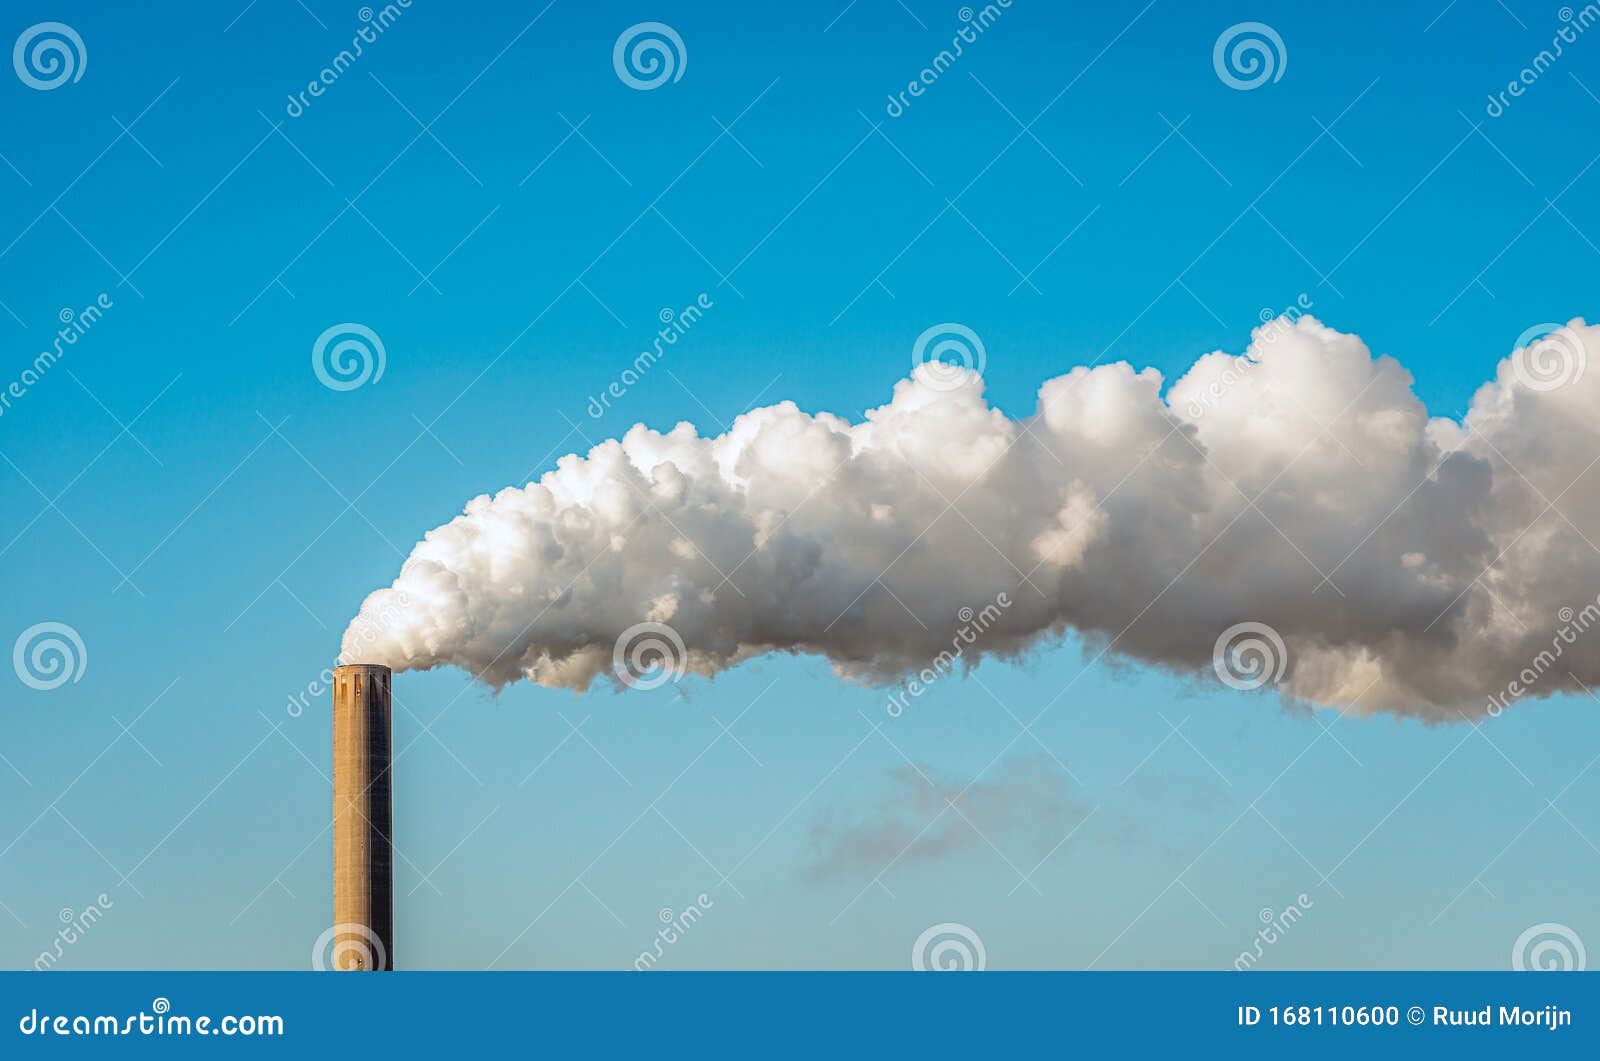 Fumo E Vapore Provenienti Da Una Ciminiera Di Fabbrica Fotografia Stock -  Immagine di scarico, architettura: 168110600